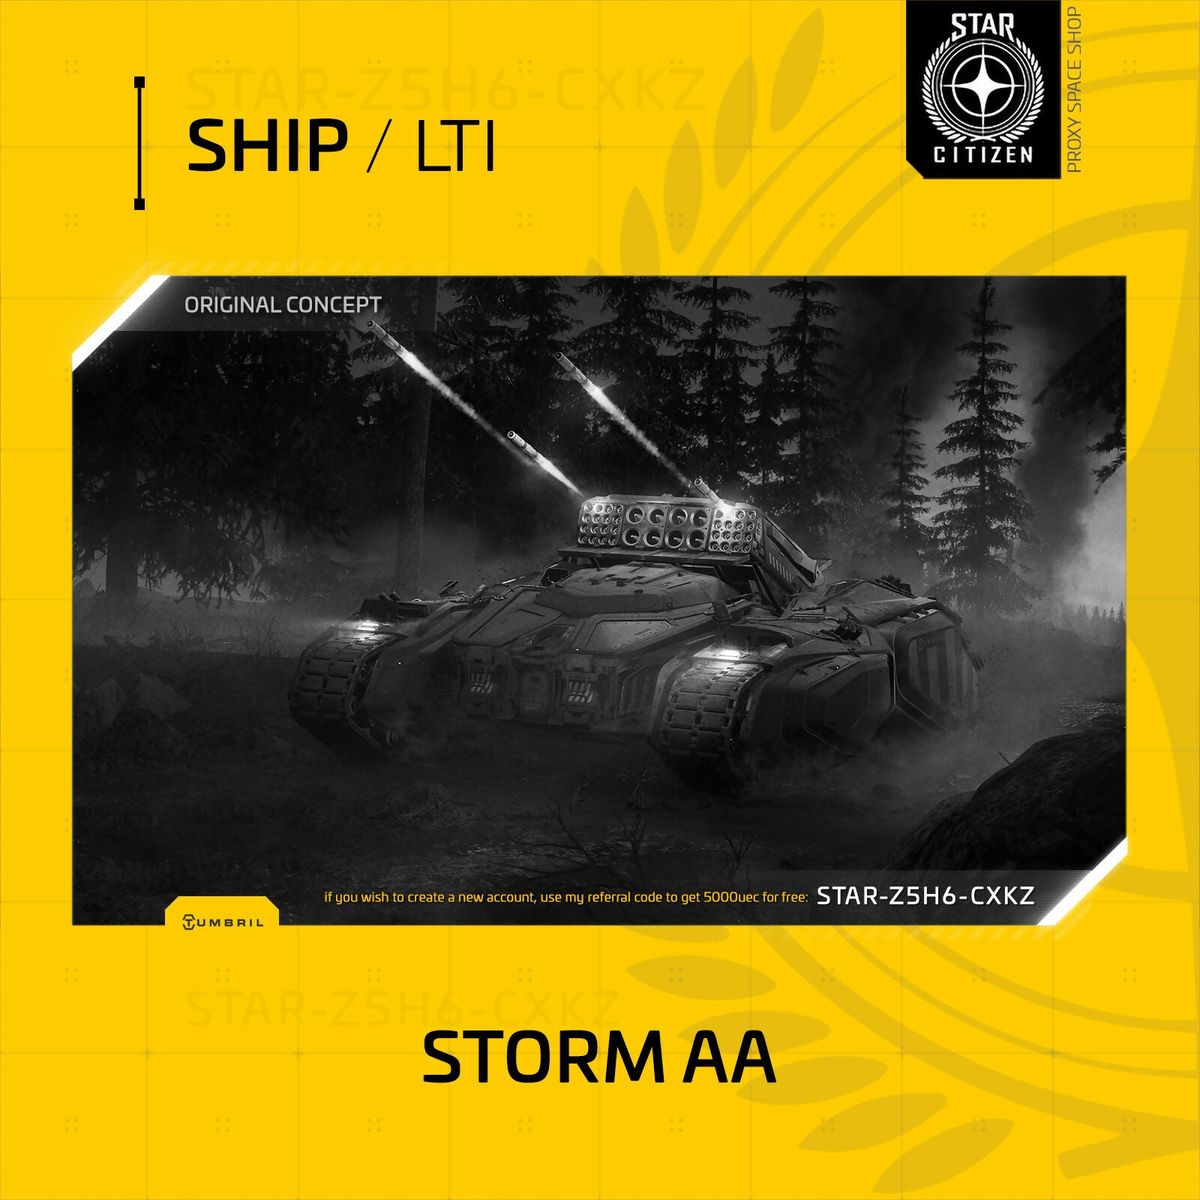 Tumbril Storm AA - Lti - Original Concept OC